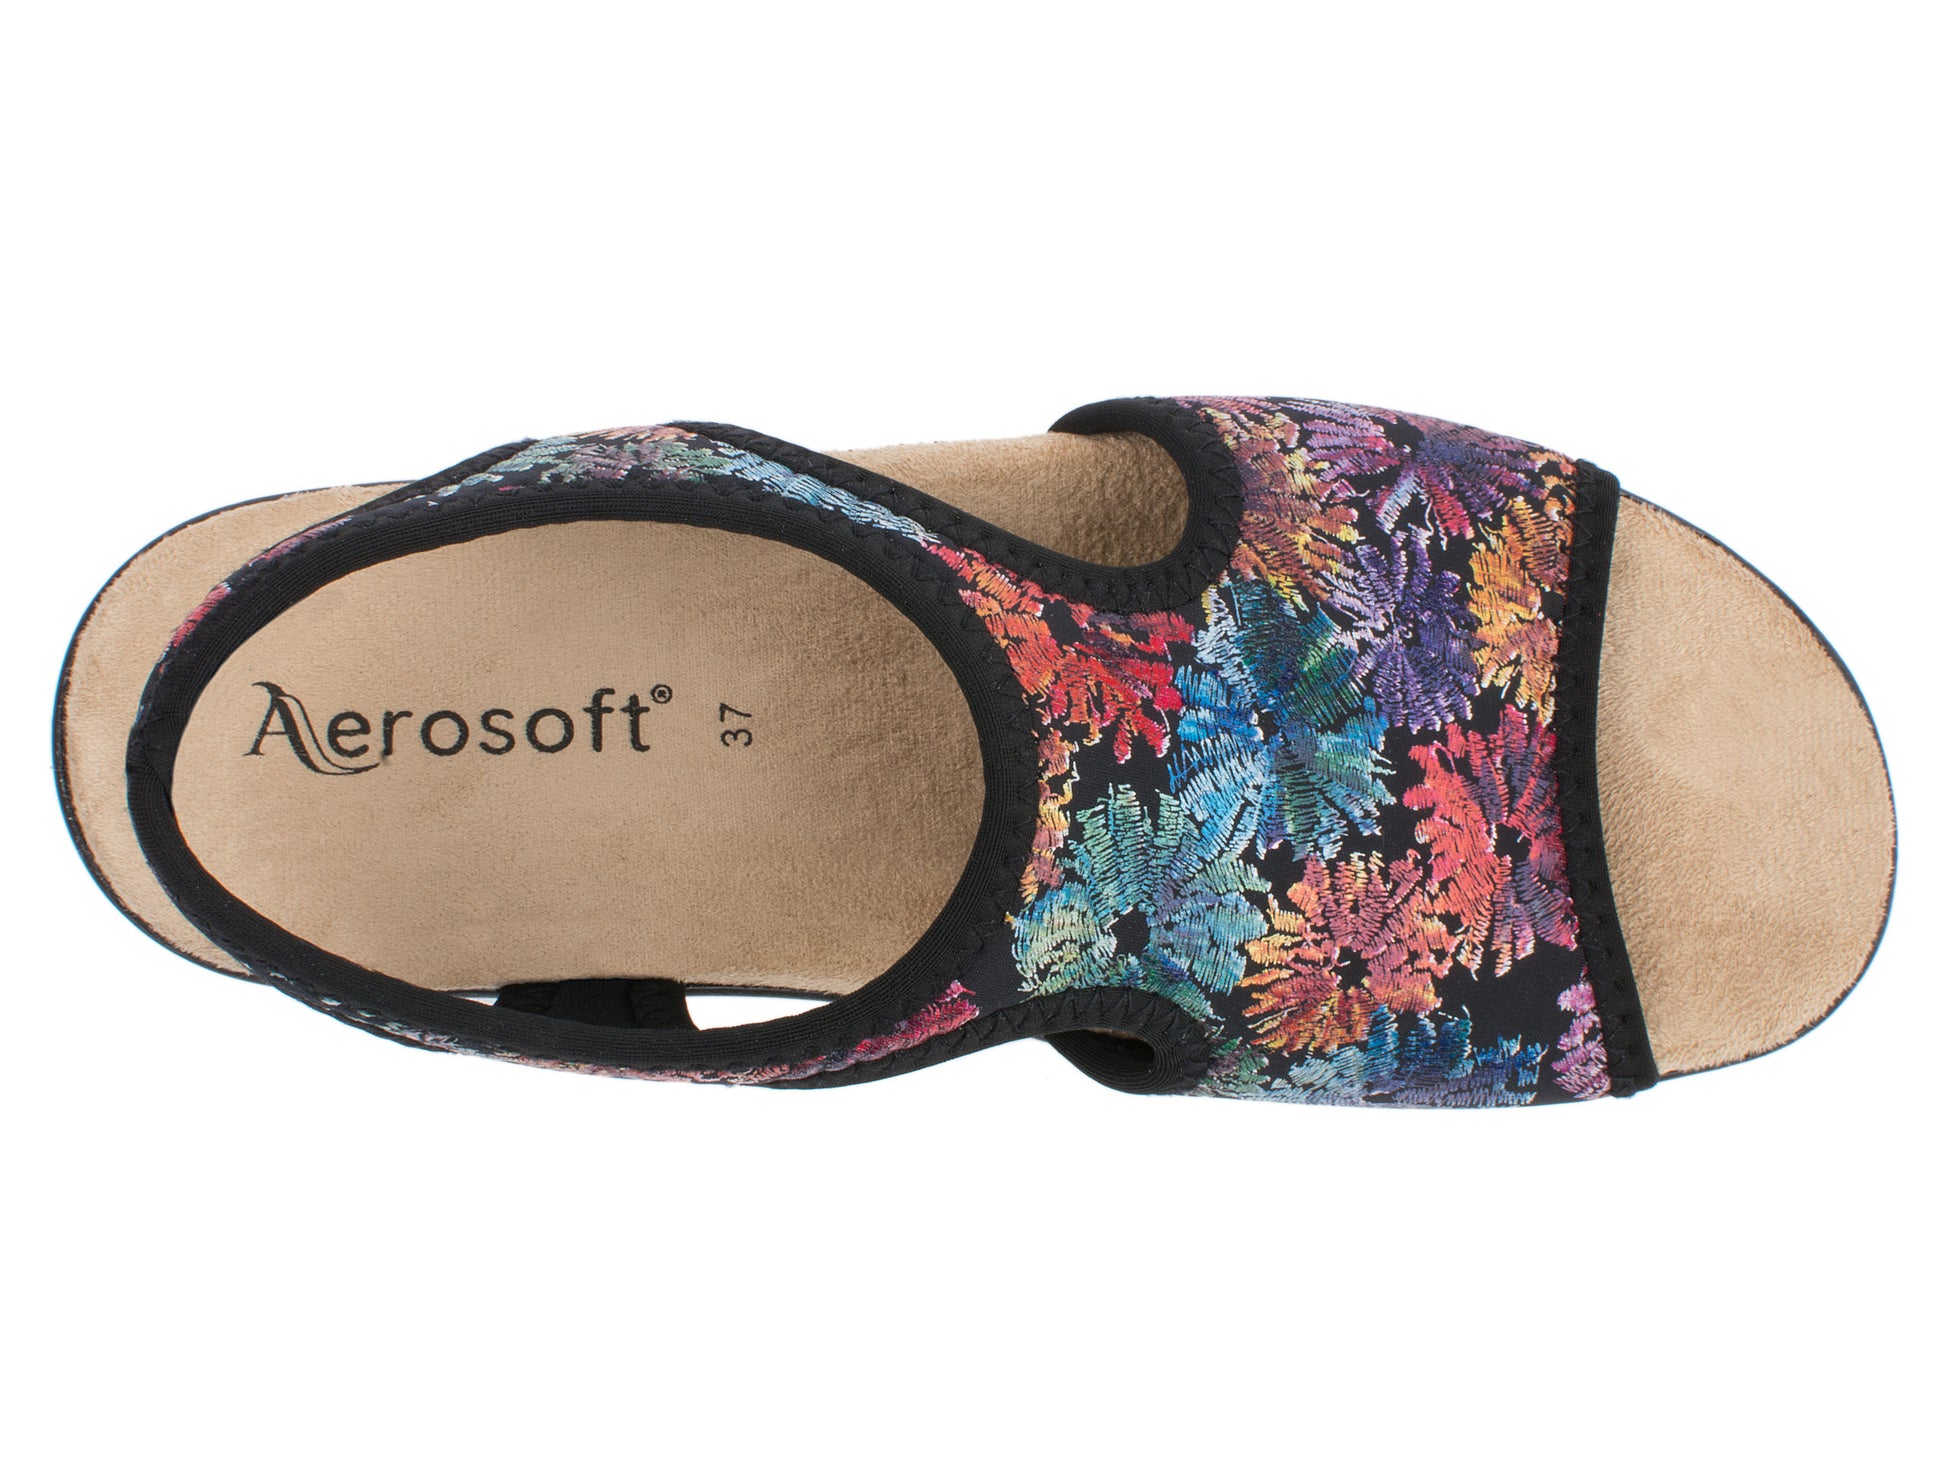 Damen Stretch Sandalette Modell Stretch 05 von Aerosoft mit Blumen Motiv von oben